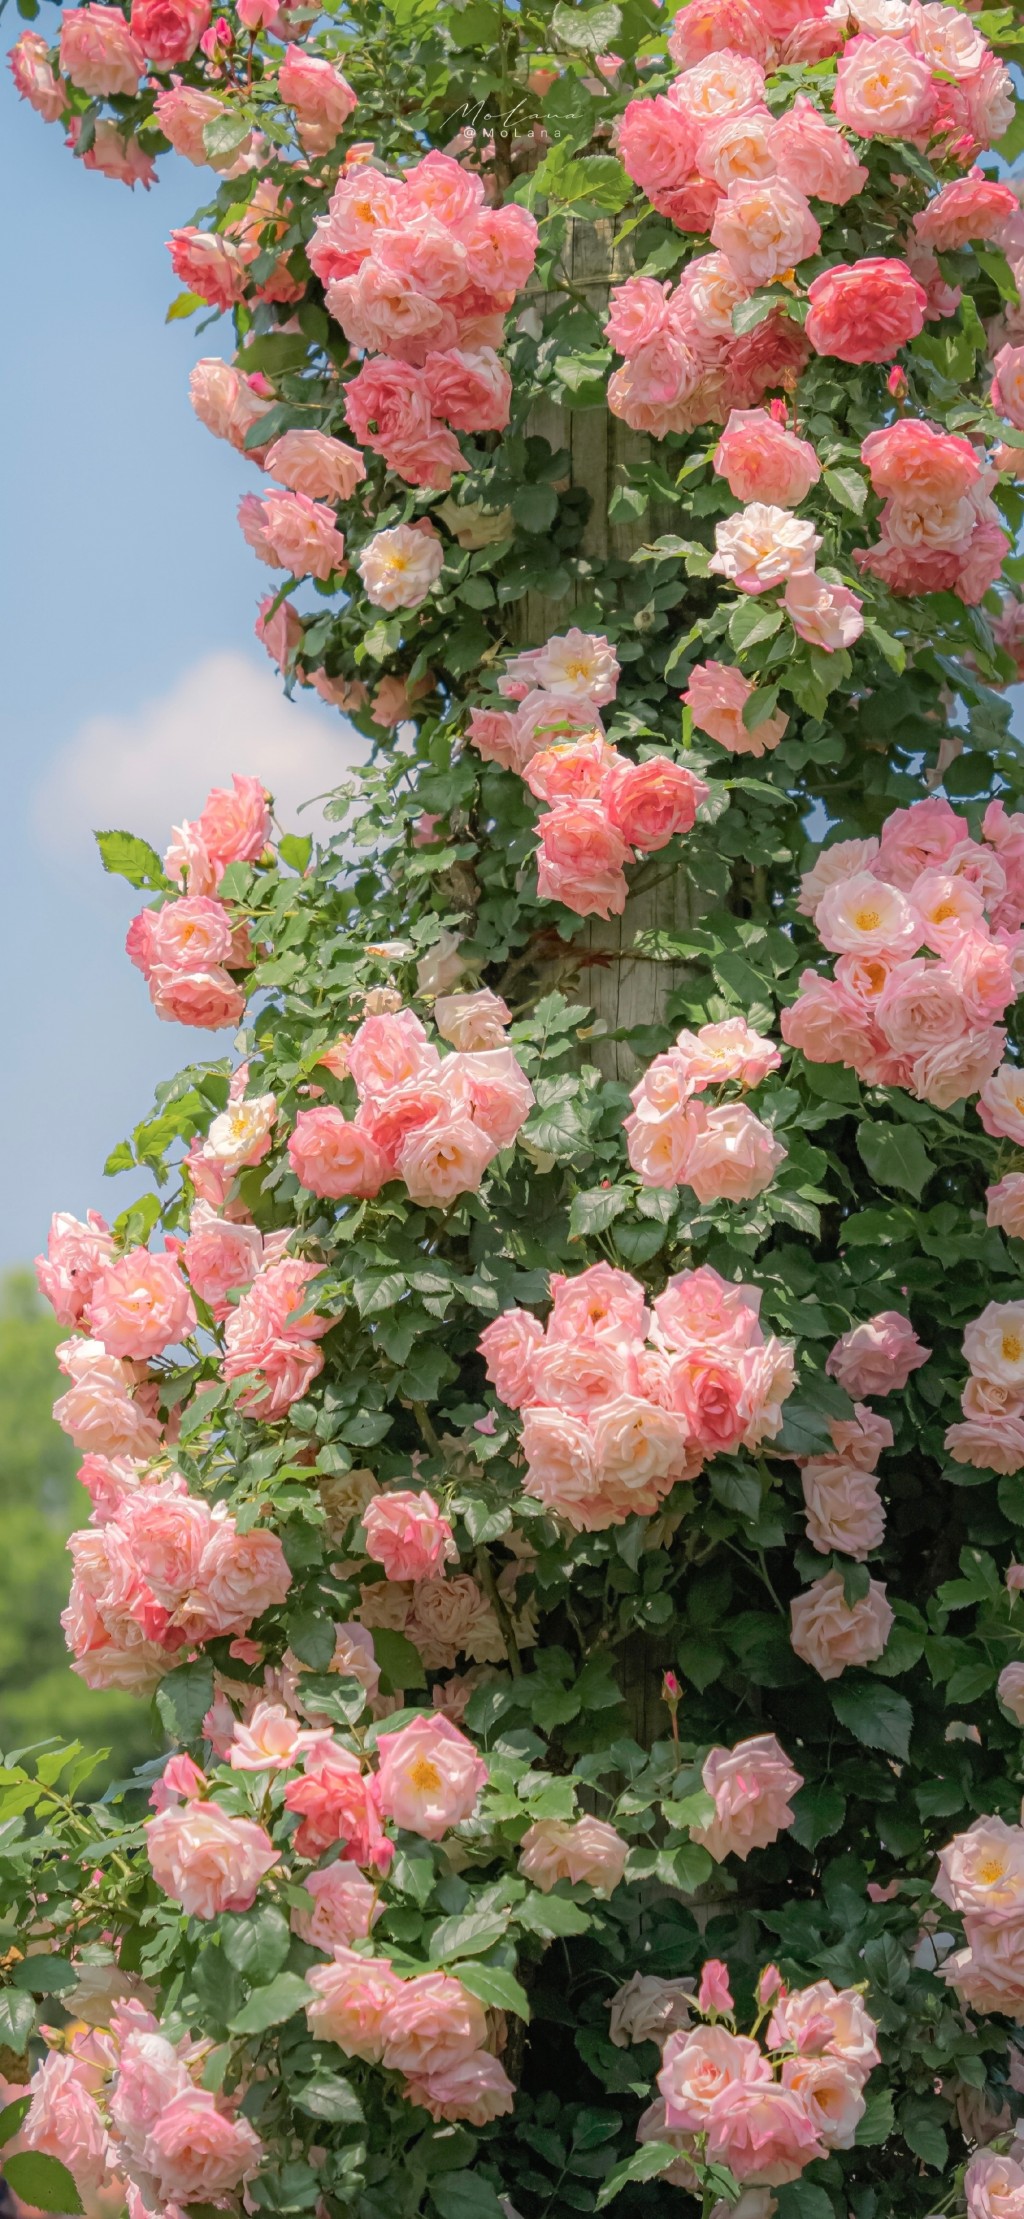 蔷薇花开清新手机壁纸 植物 靓丽图库